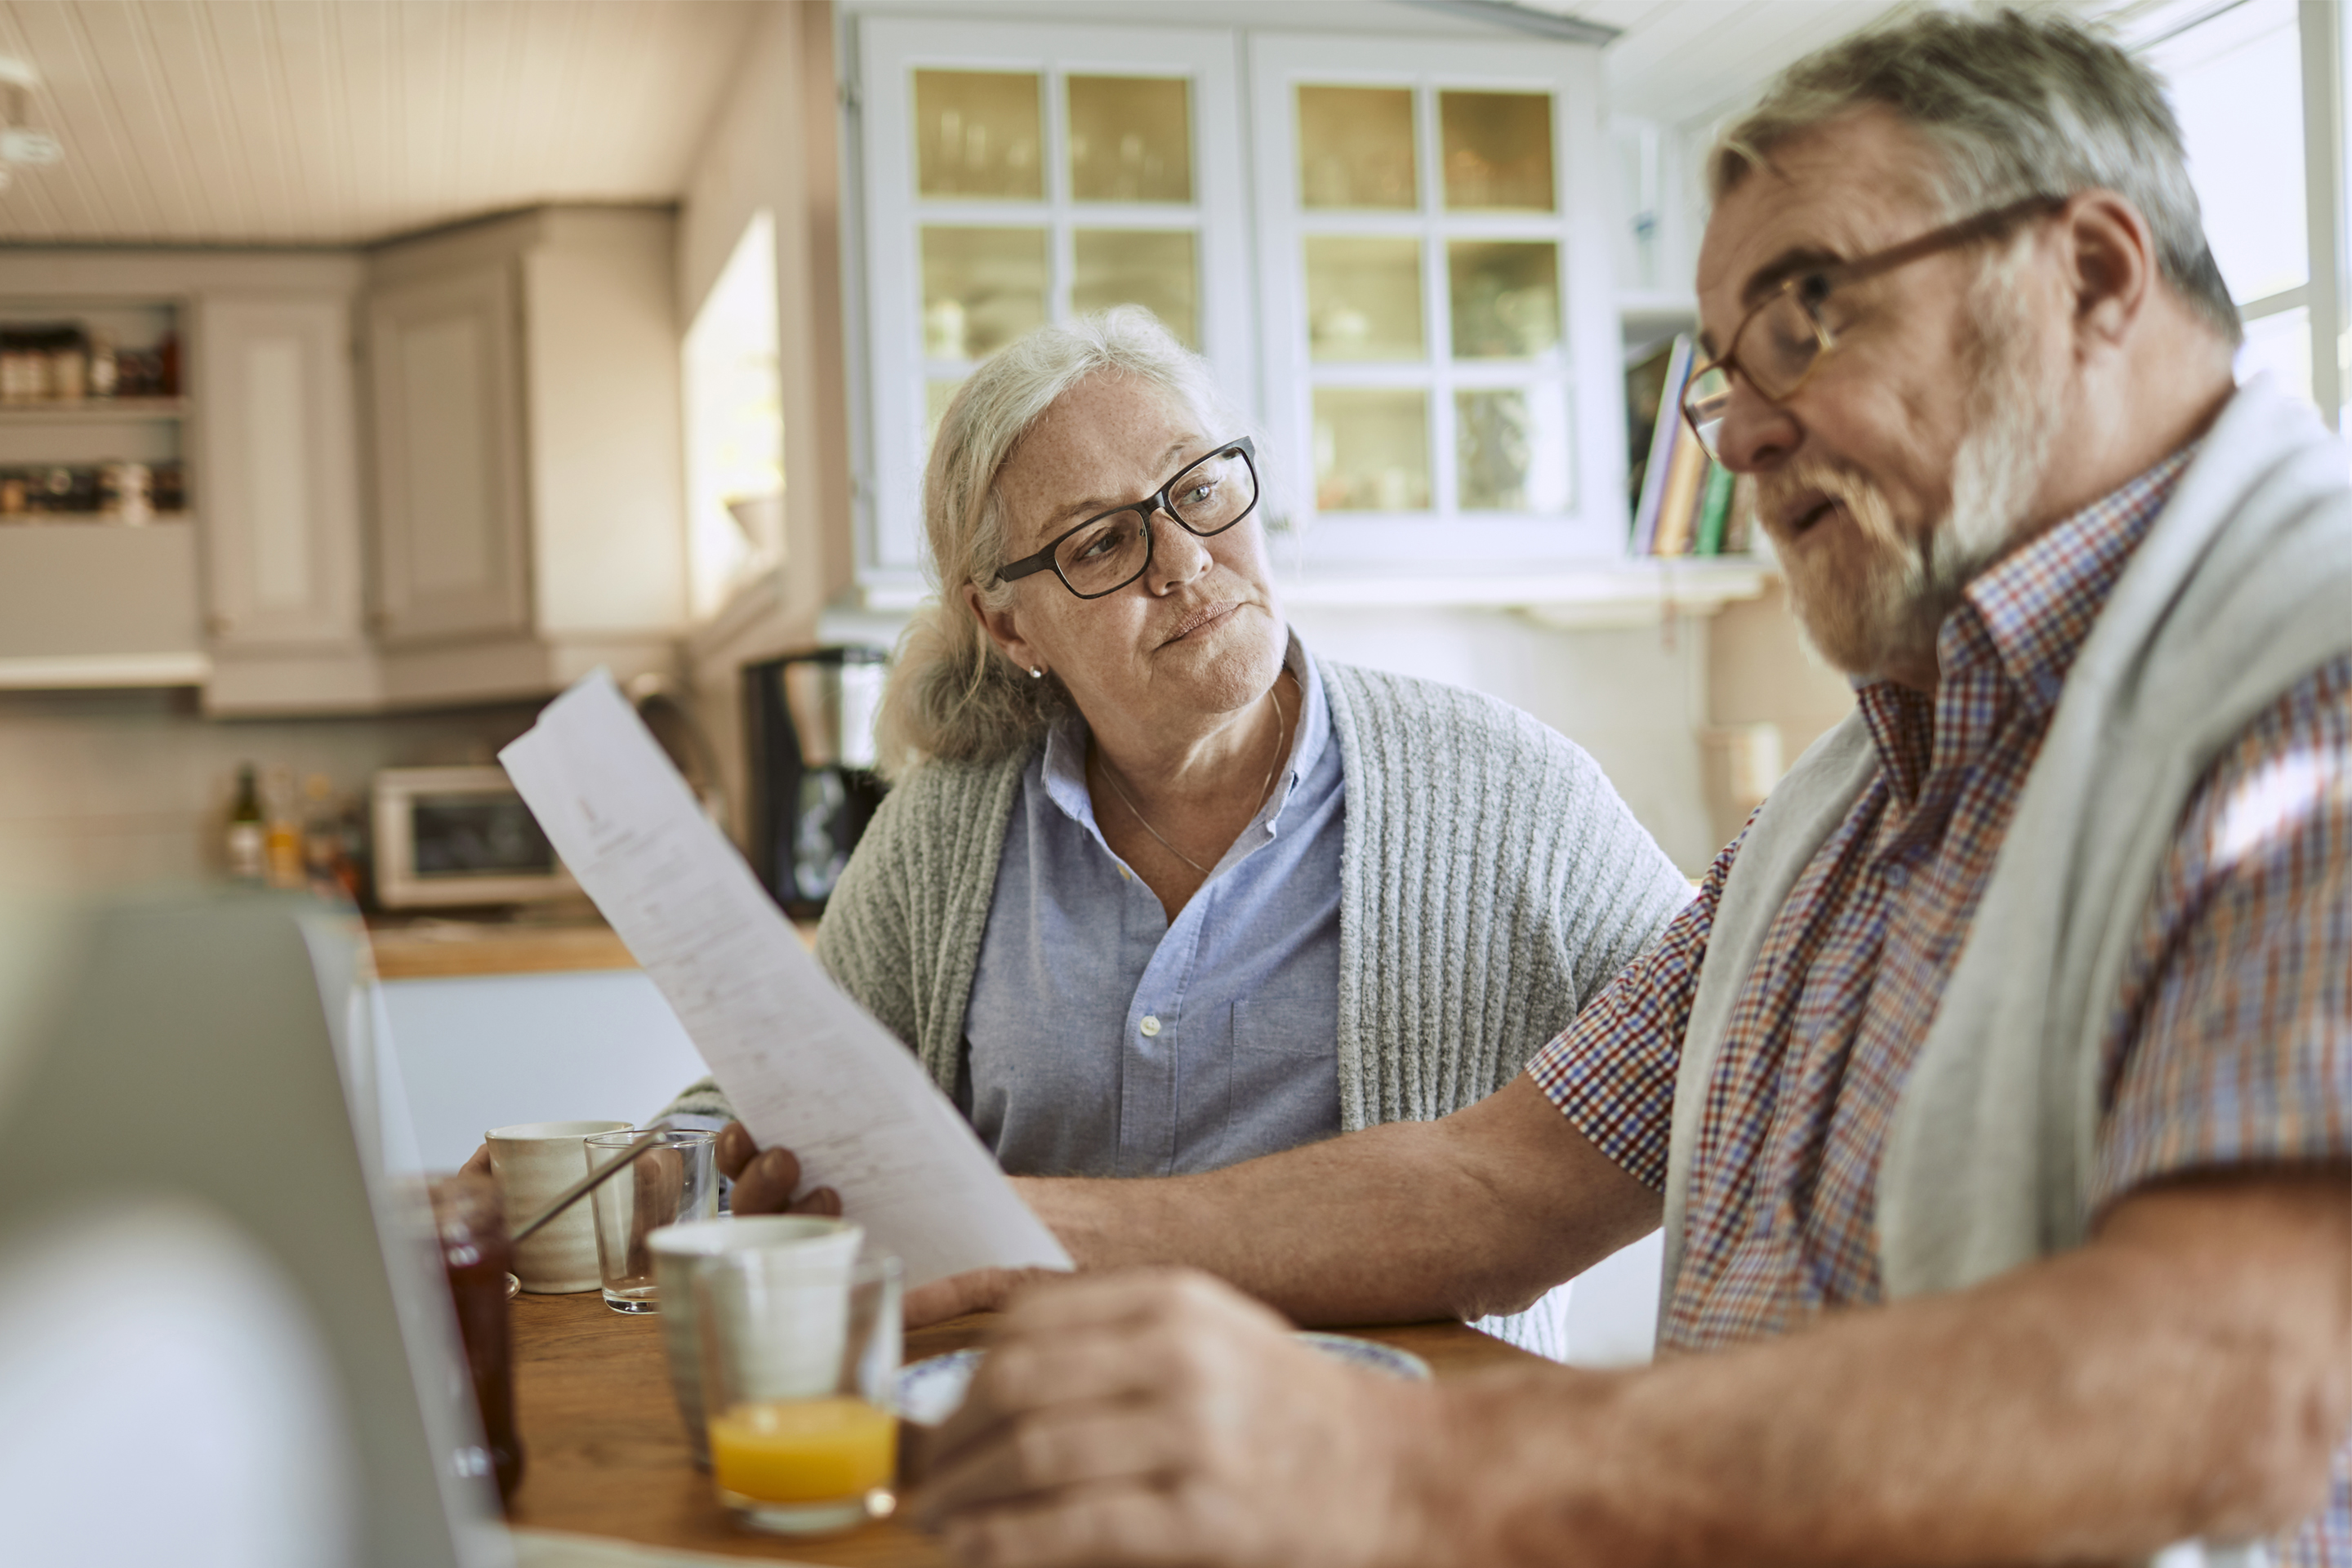 6 Best Life Insurance for Seniors of 2021